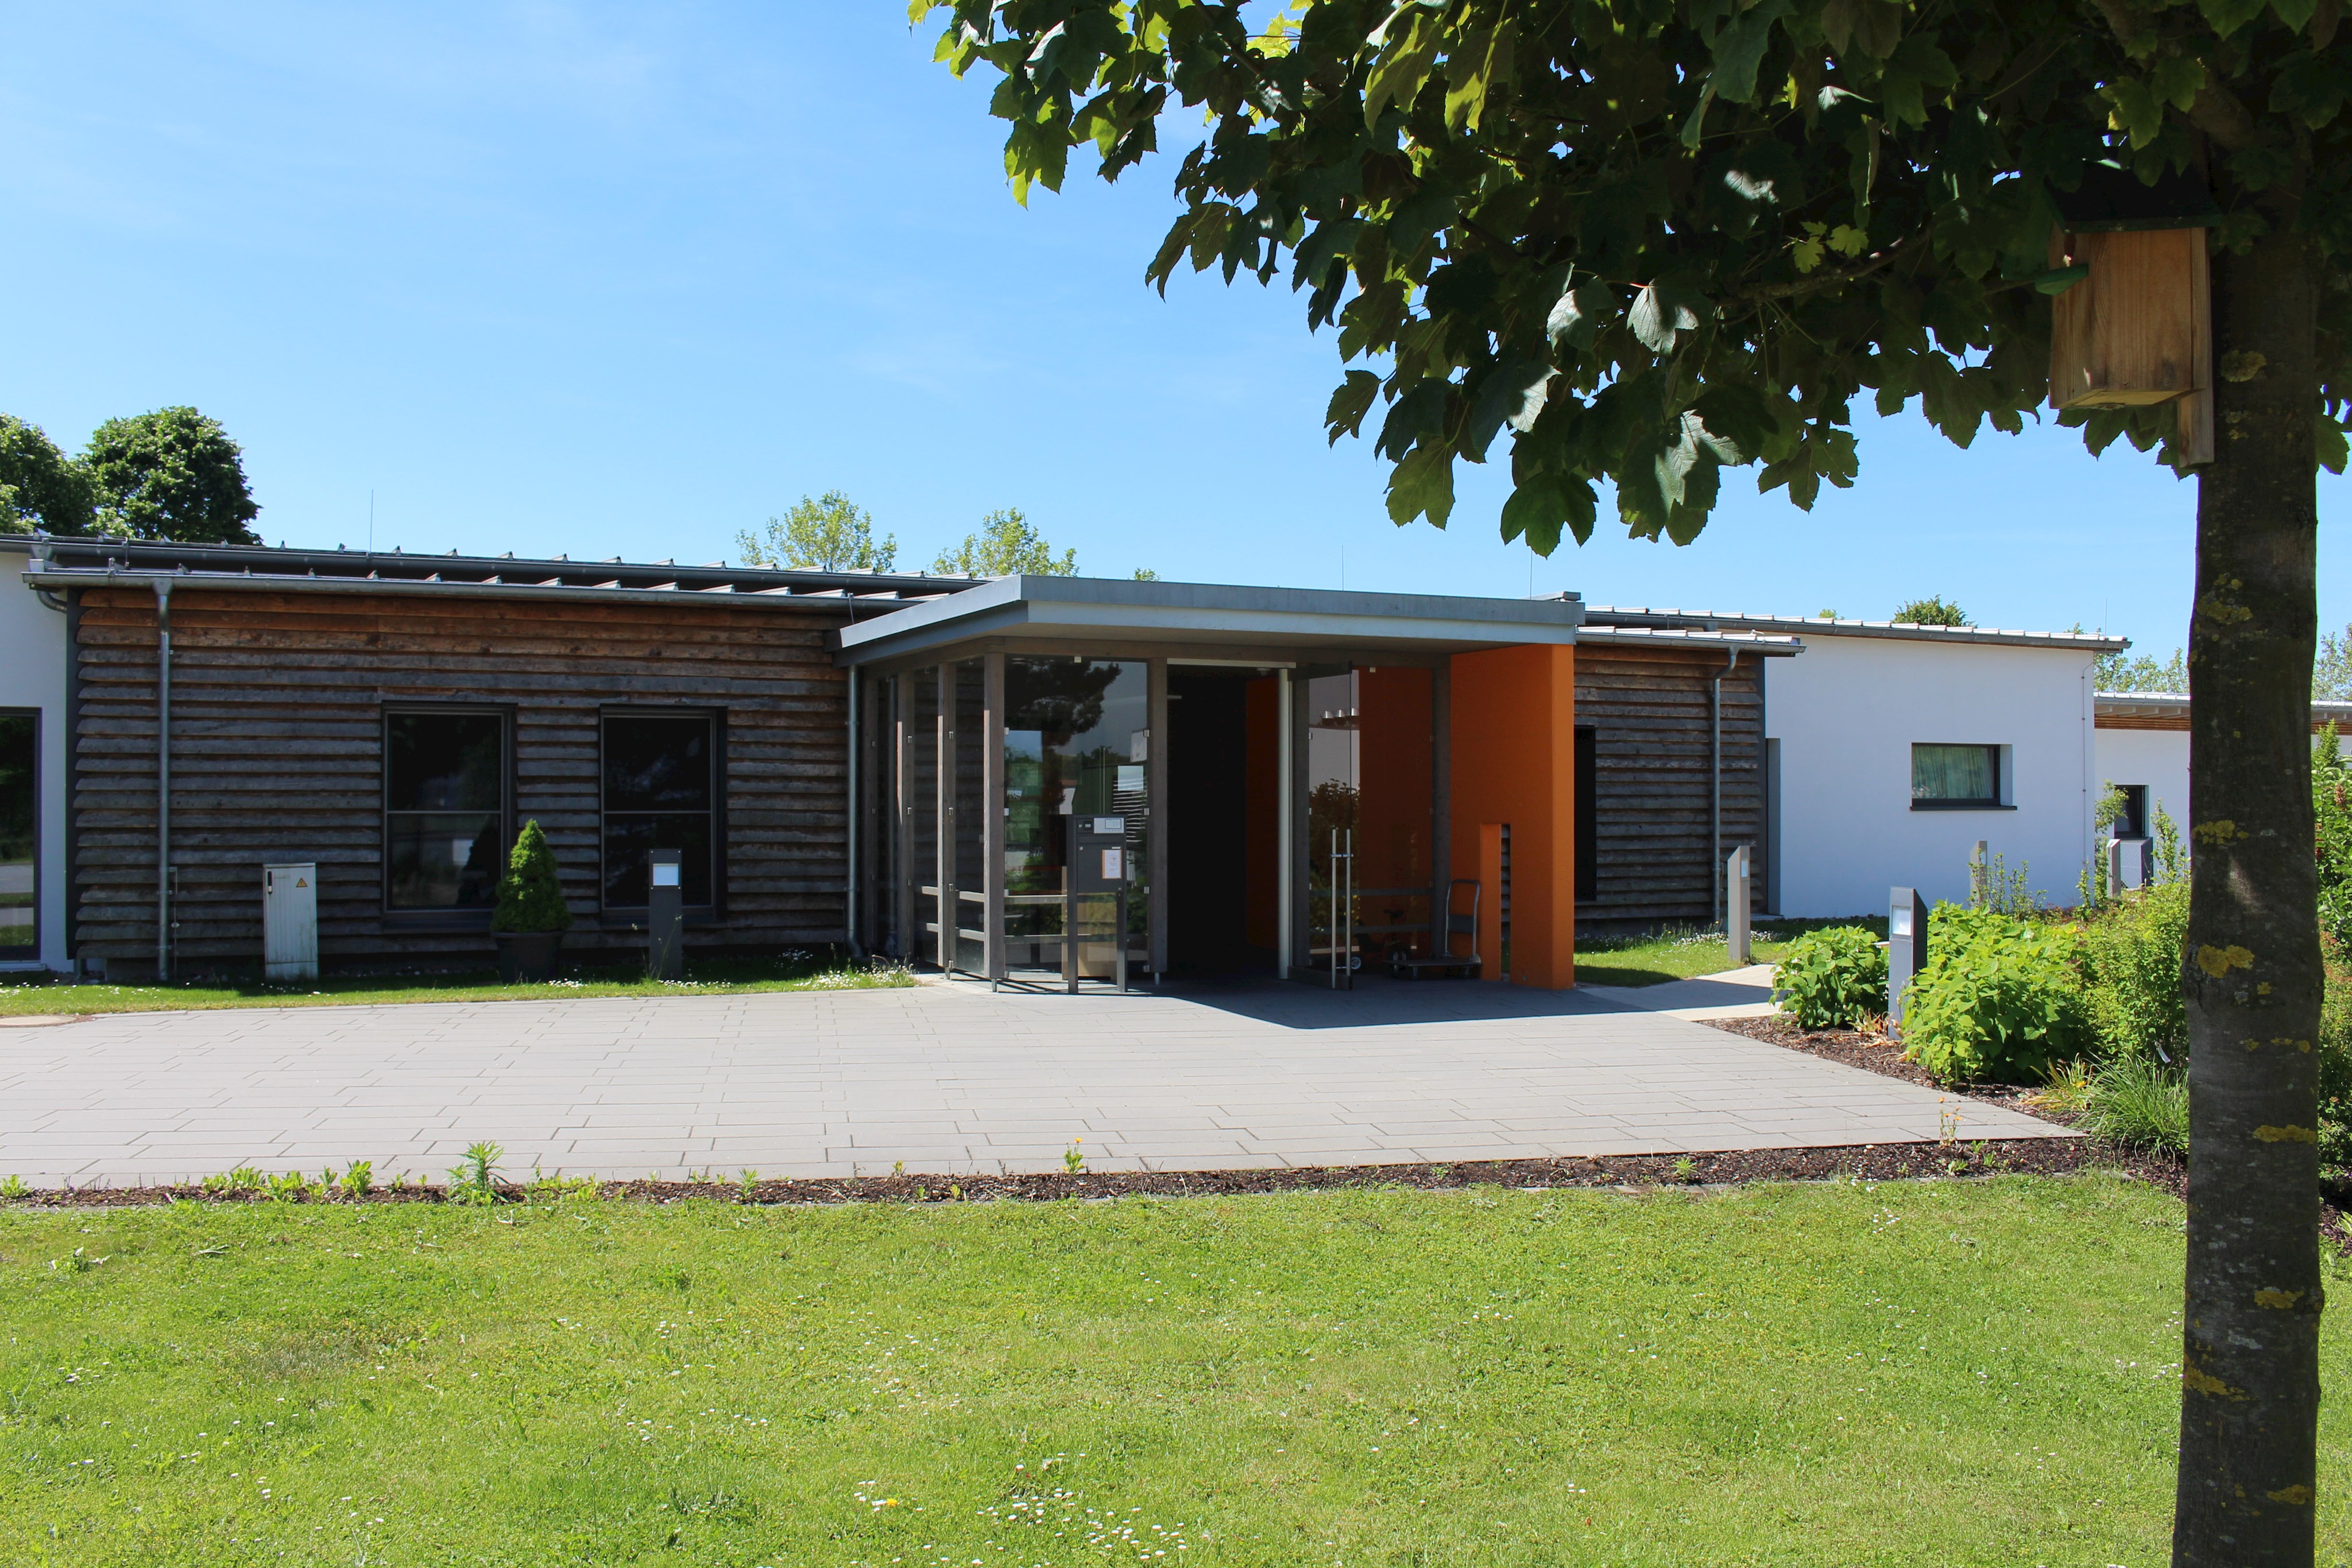 Die Bezirkskliniken Schwaben haben die Immobilie Kinderkrippe von Kids & Company in Günzburg erworben. Der Kauf wurde am heutigen Freitag (18.06.2021) notariell beurkundet.